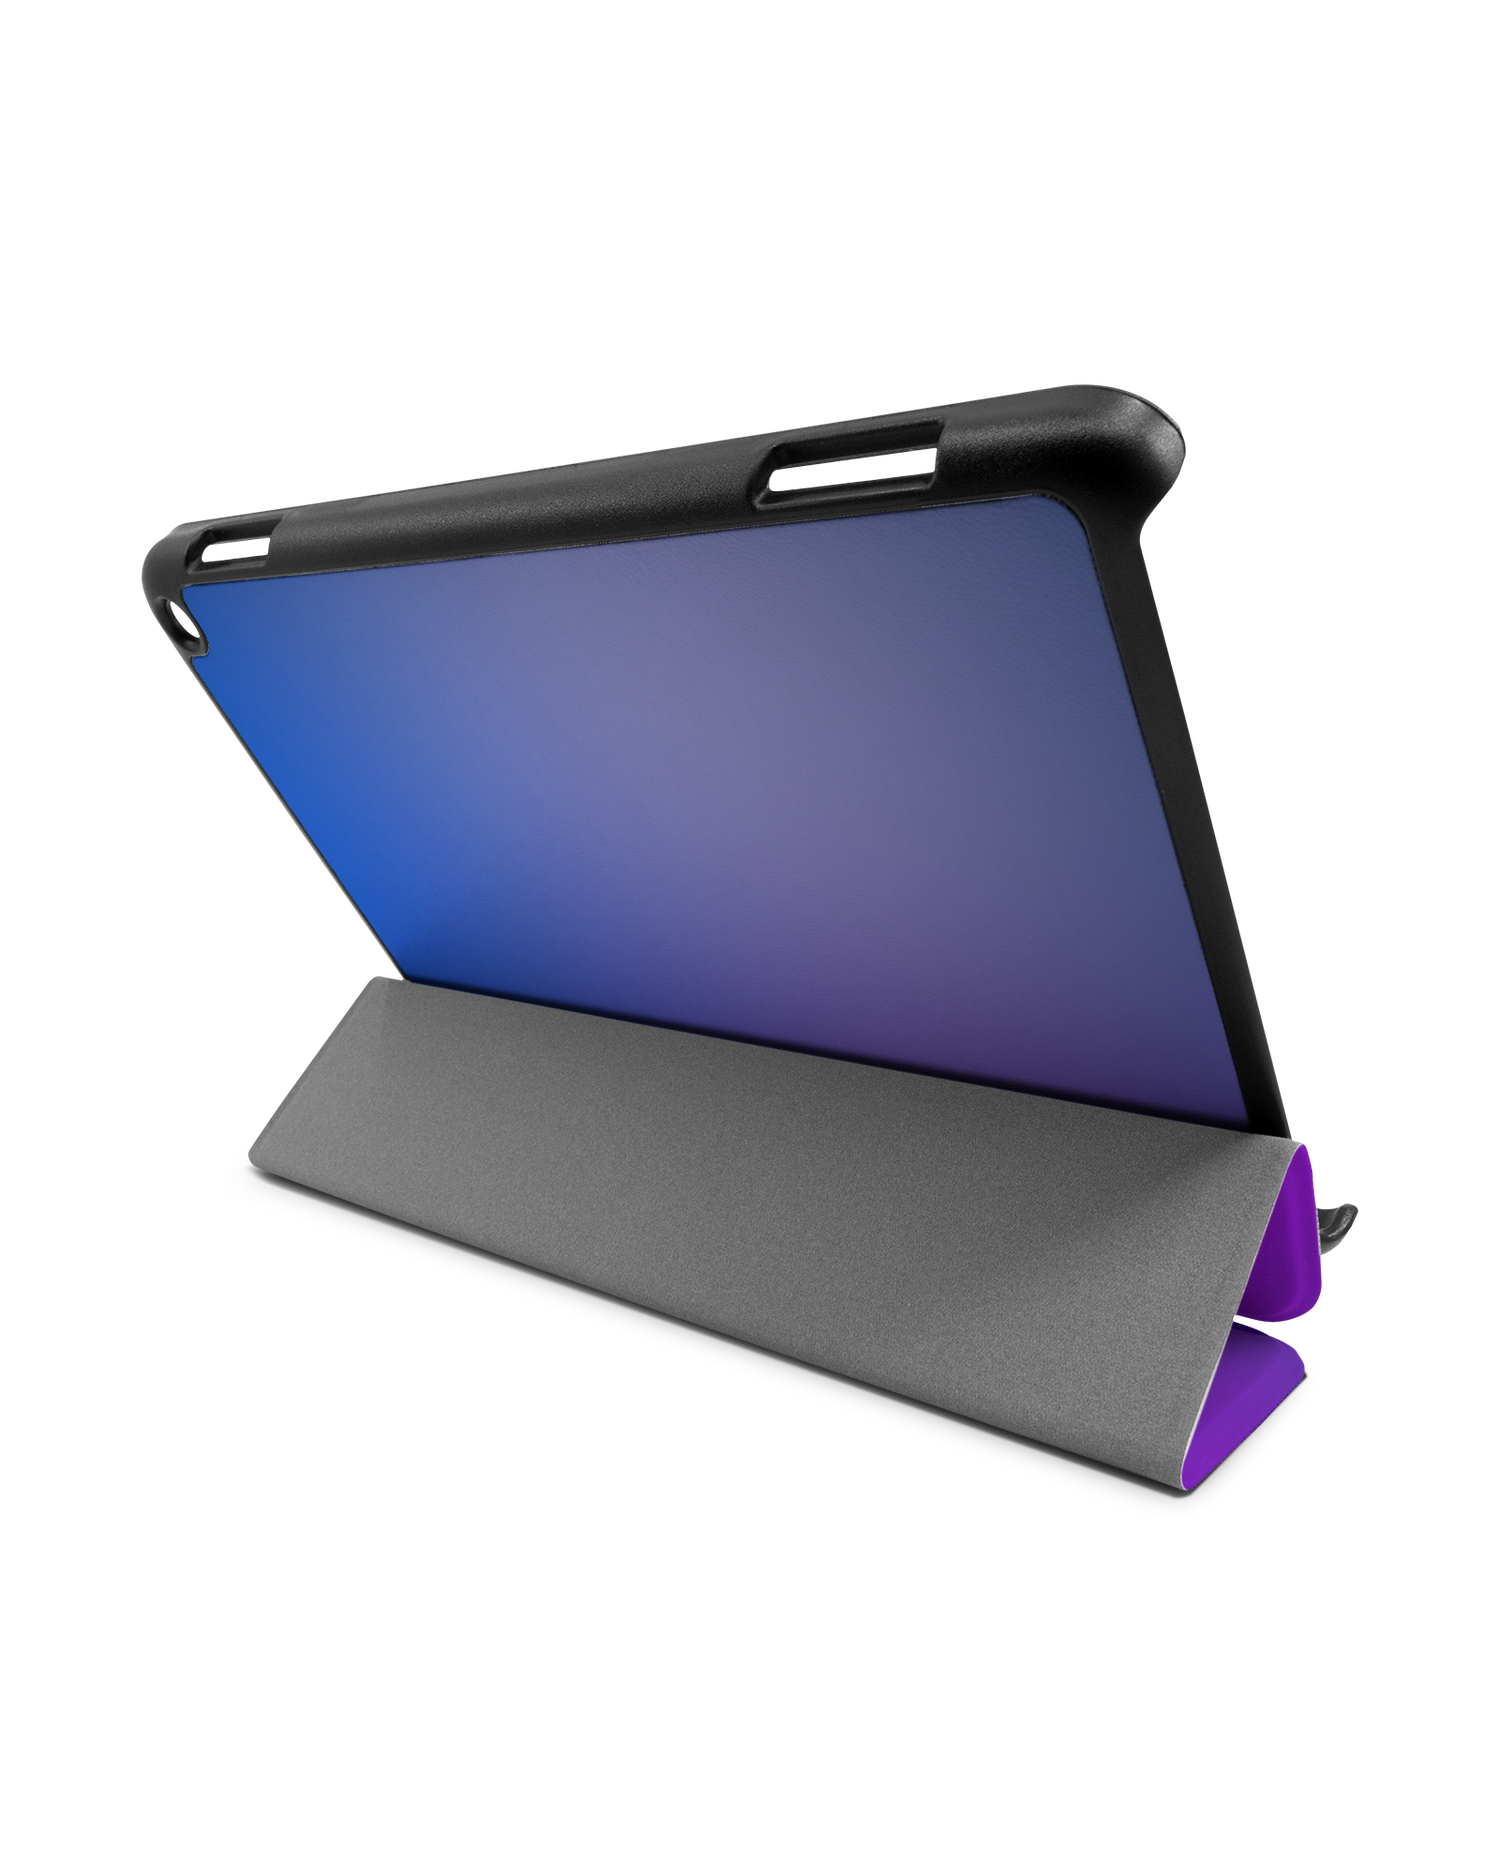 Blueberry Tablet Smart Case für Amazon Fire HD 8 (2022), Amazon Fire HD 8 Plus (2022), Amazon Fire HD 8 (2020), Amazon Fire HD 8 Plus (2020): Aufgestellt im Querformat